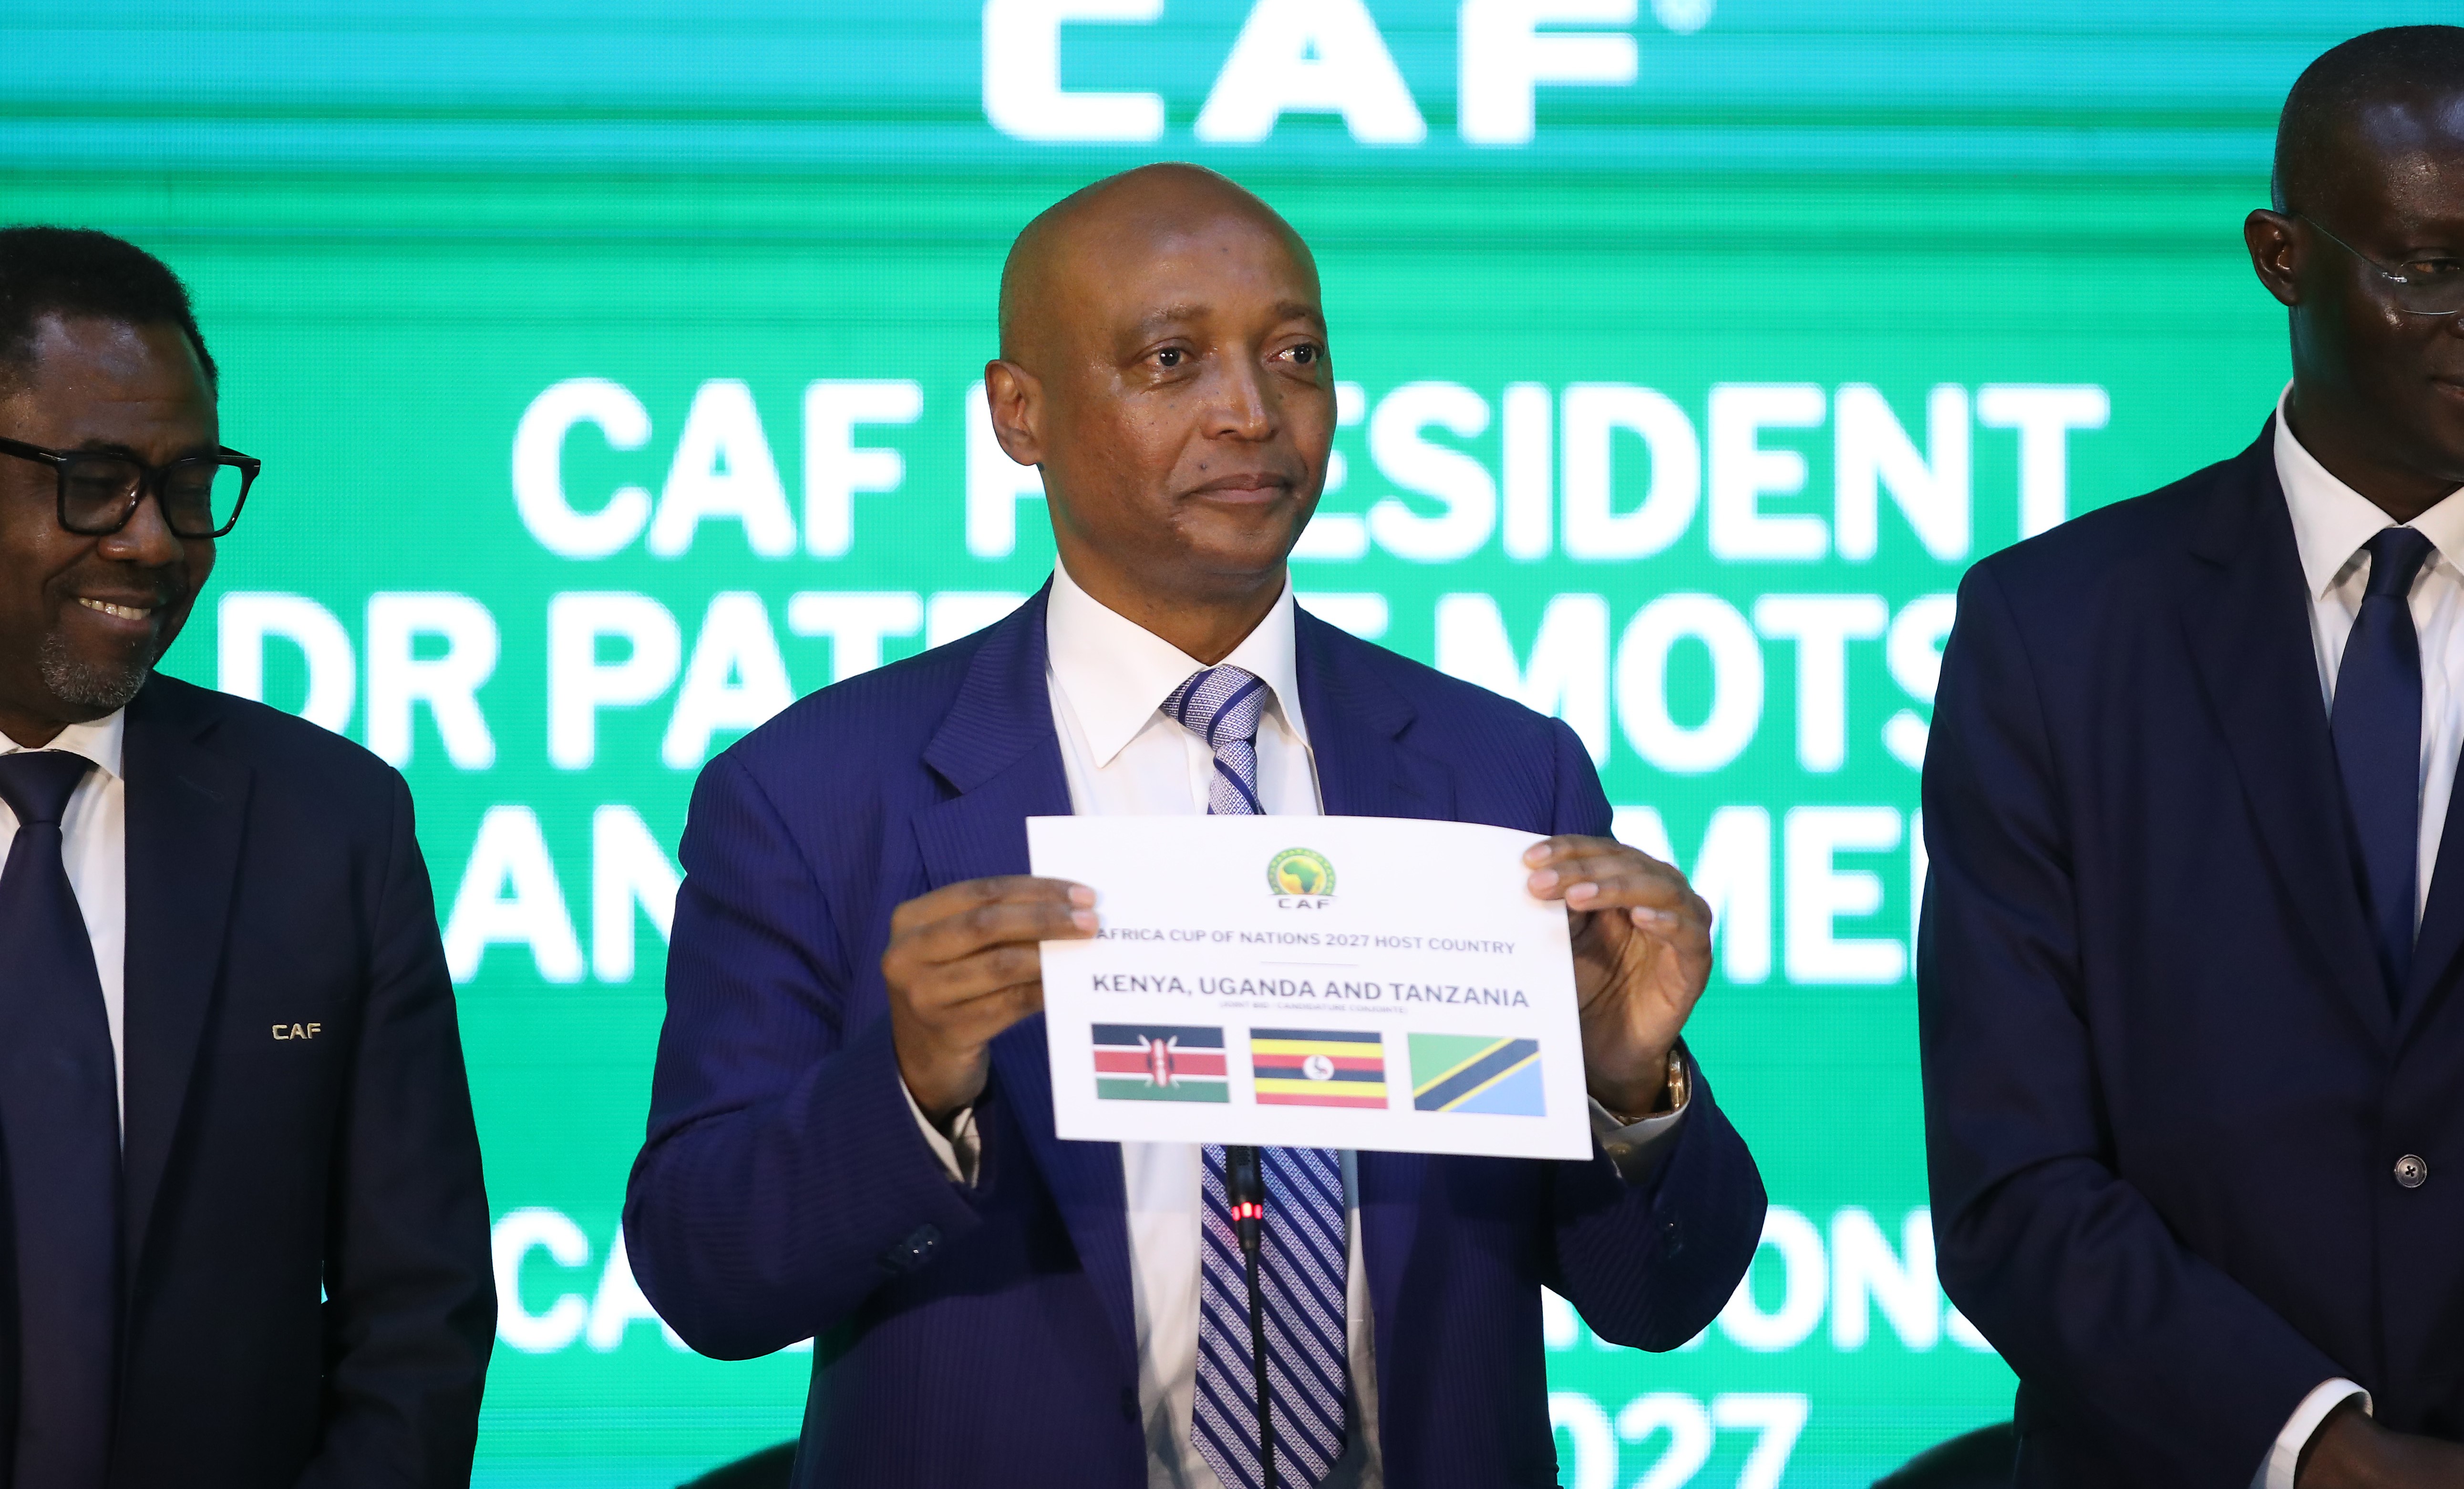 La CAF attribue l'organisation de la CAN 2027 au trio Kenya-Tanzanie-Ouganda